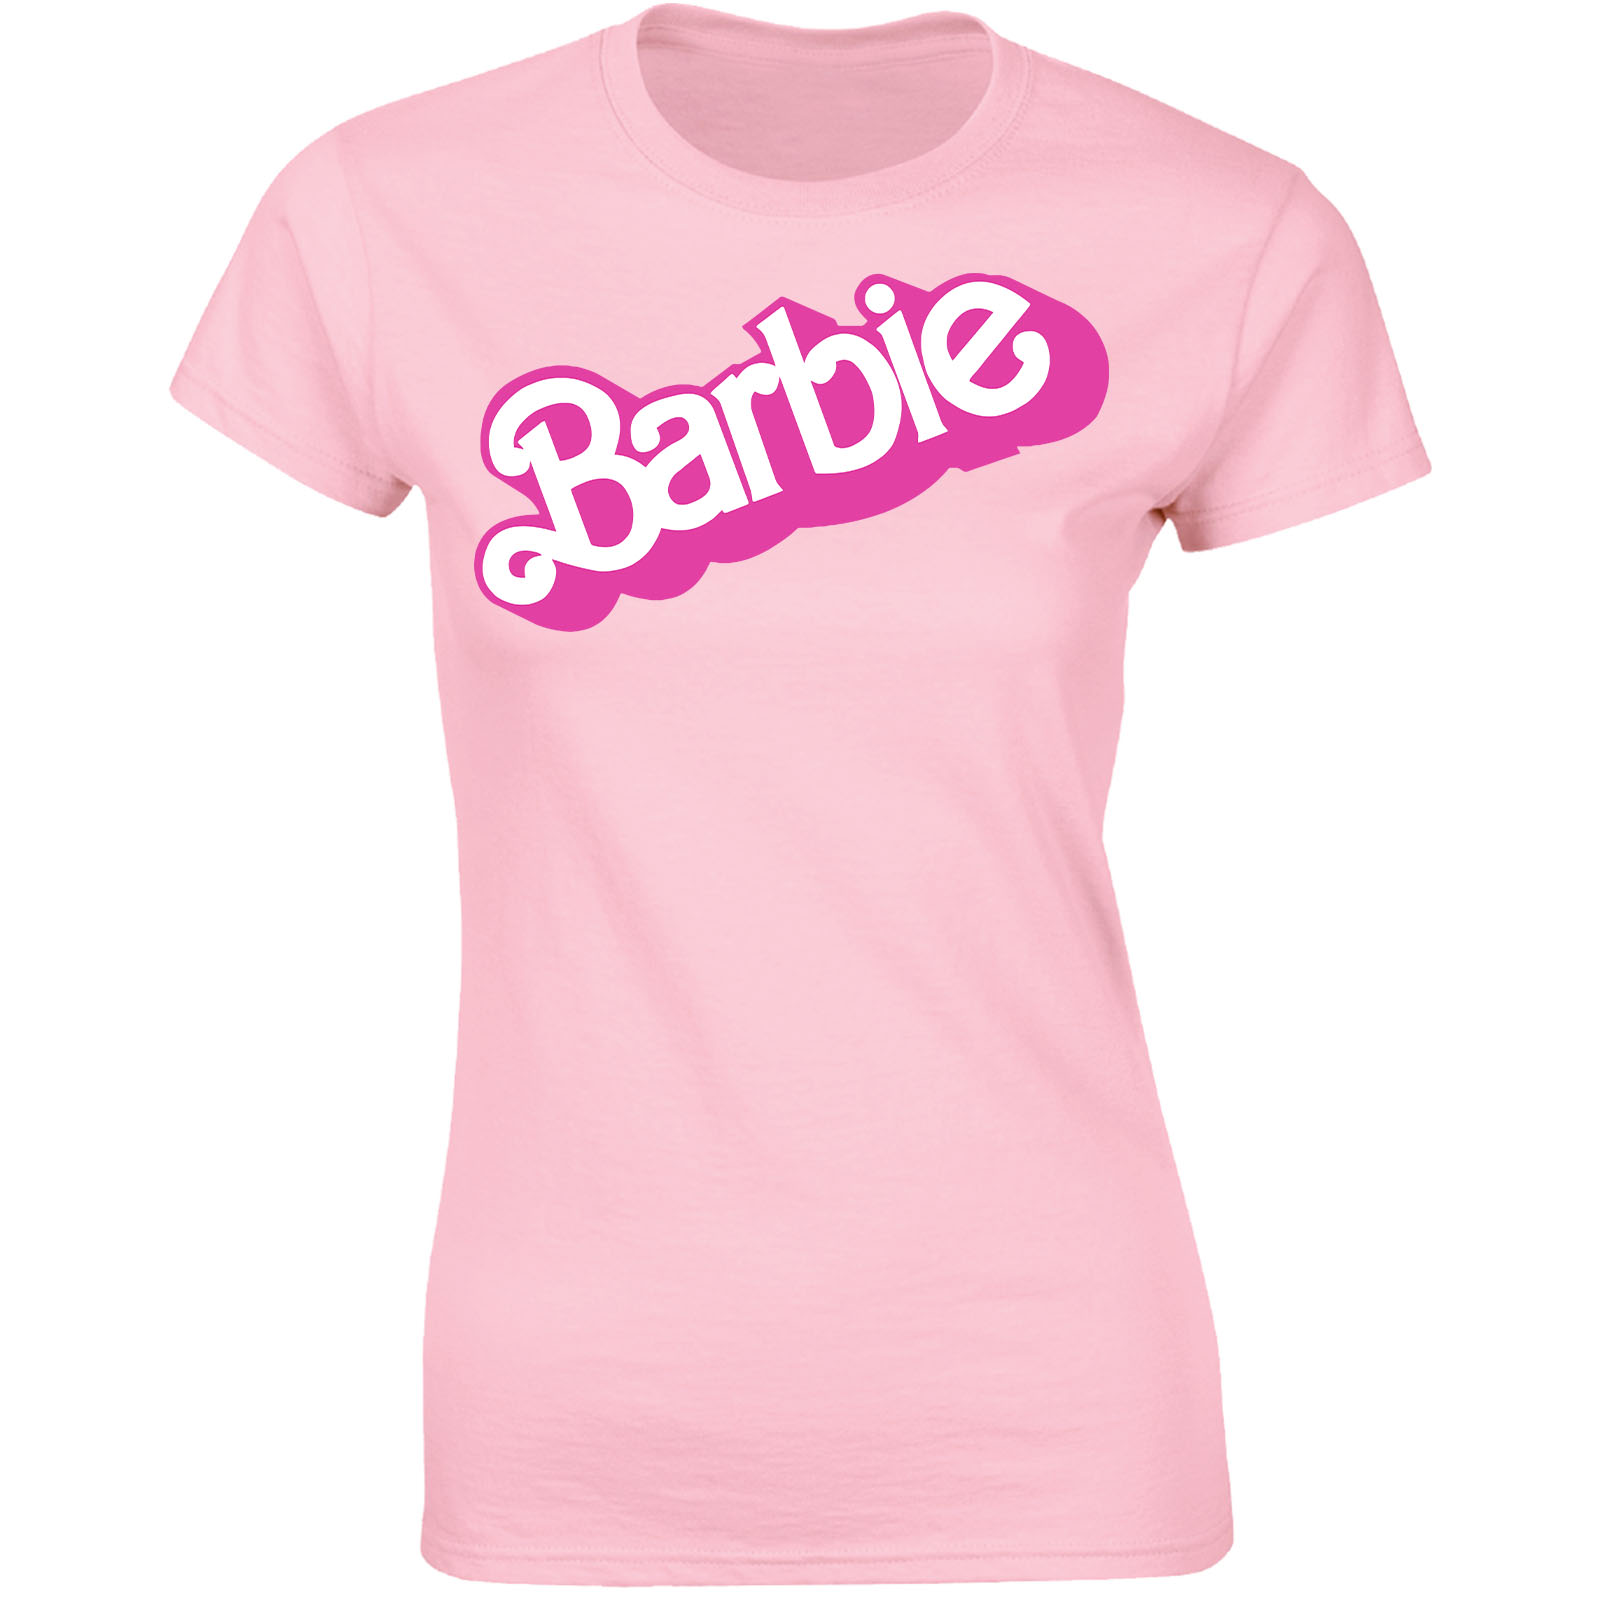 https://bathrobesuk.com/imgs/BarbieDoll/Ladiestshirt/Ladiestshirt-Lightpink.jpg